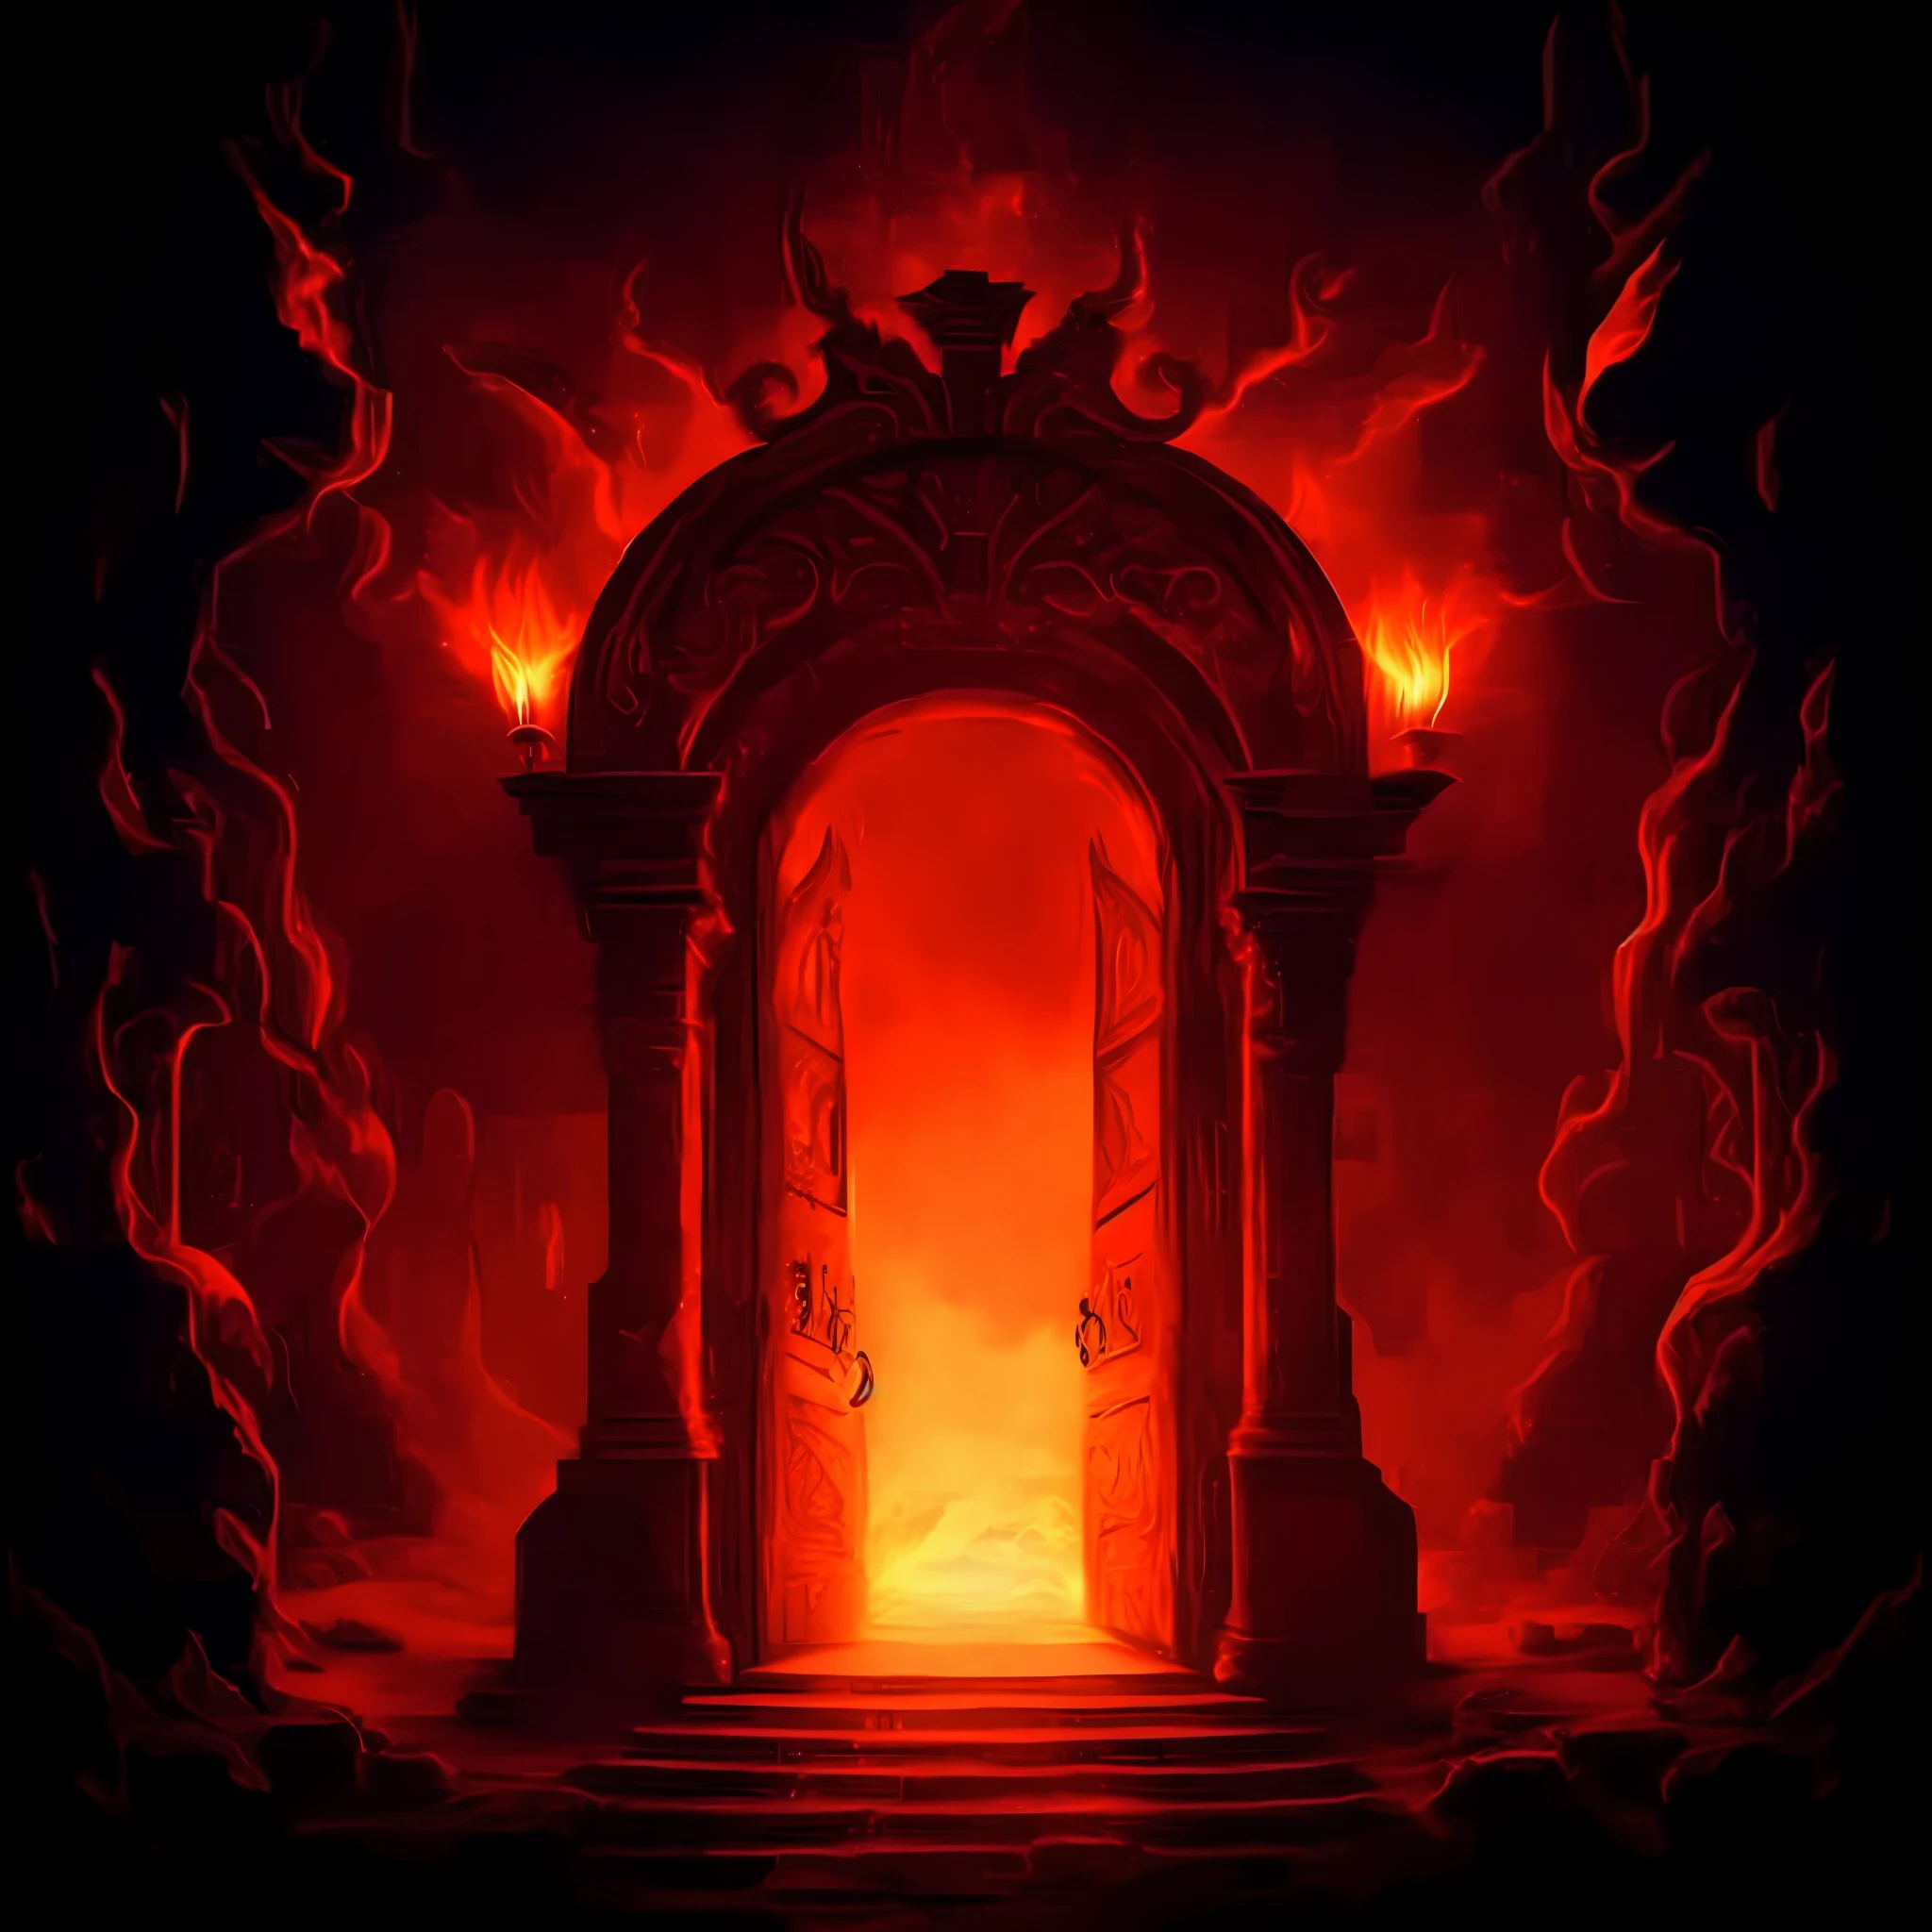 Una puerta cortafuegos roja en una habitación oscura con un fuego saliendo, un portal al reino de la llama perdida, portal to hell, puerta al infierno, the puerta al infierno, the Puertas del infierno, Puertas del infierno, la gran puerta del infierno, fondo del infierno, portal al reino etéreo, estudiando un portal de grieta infernal abierto, Un portal a las profundidades